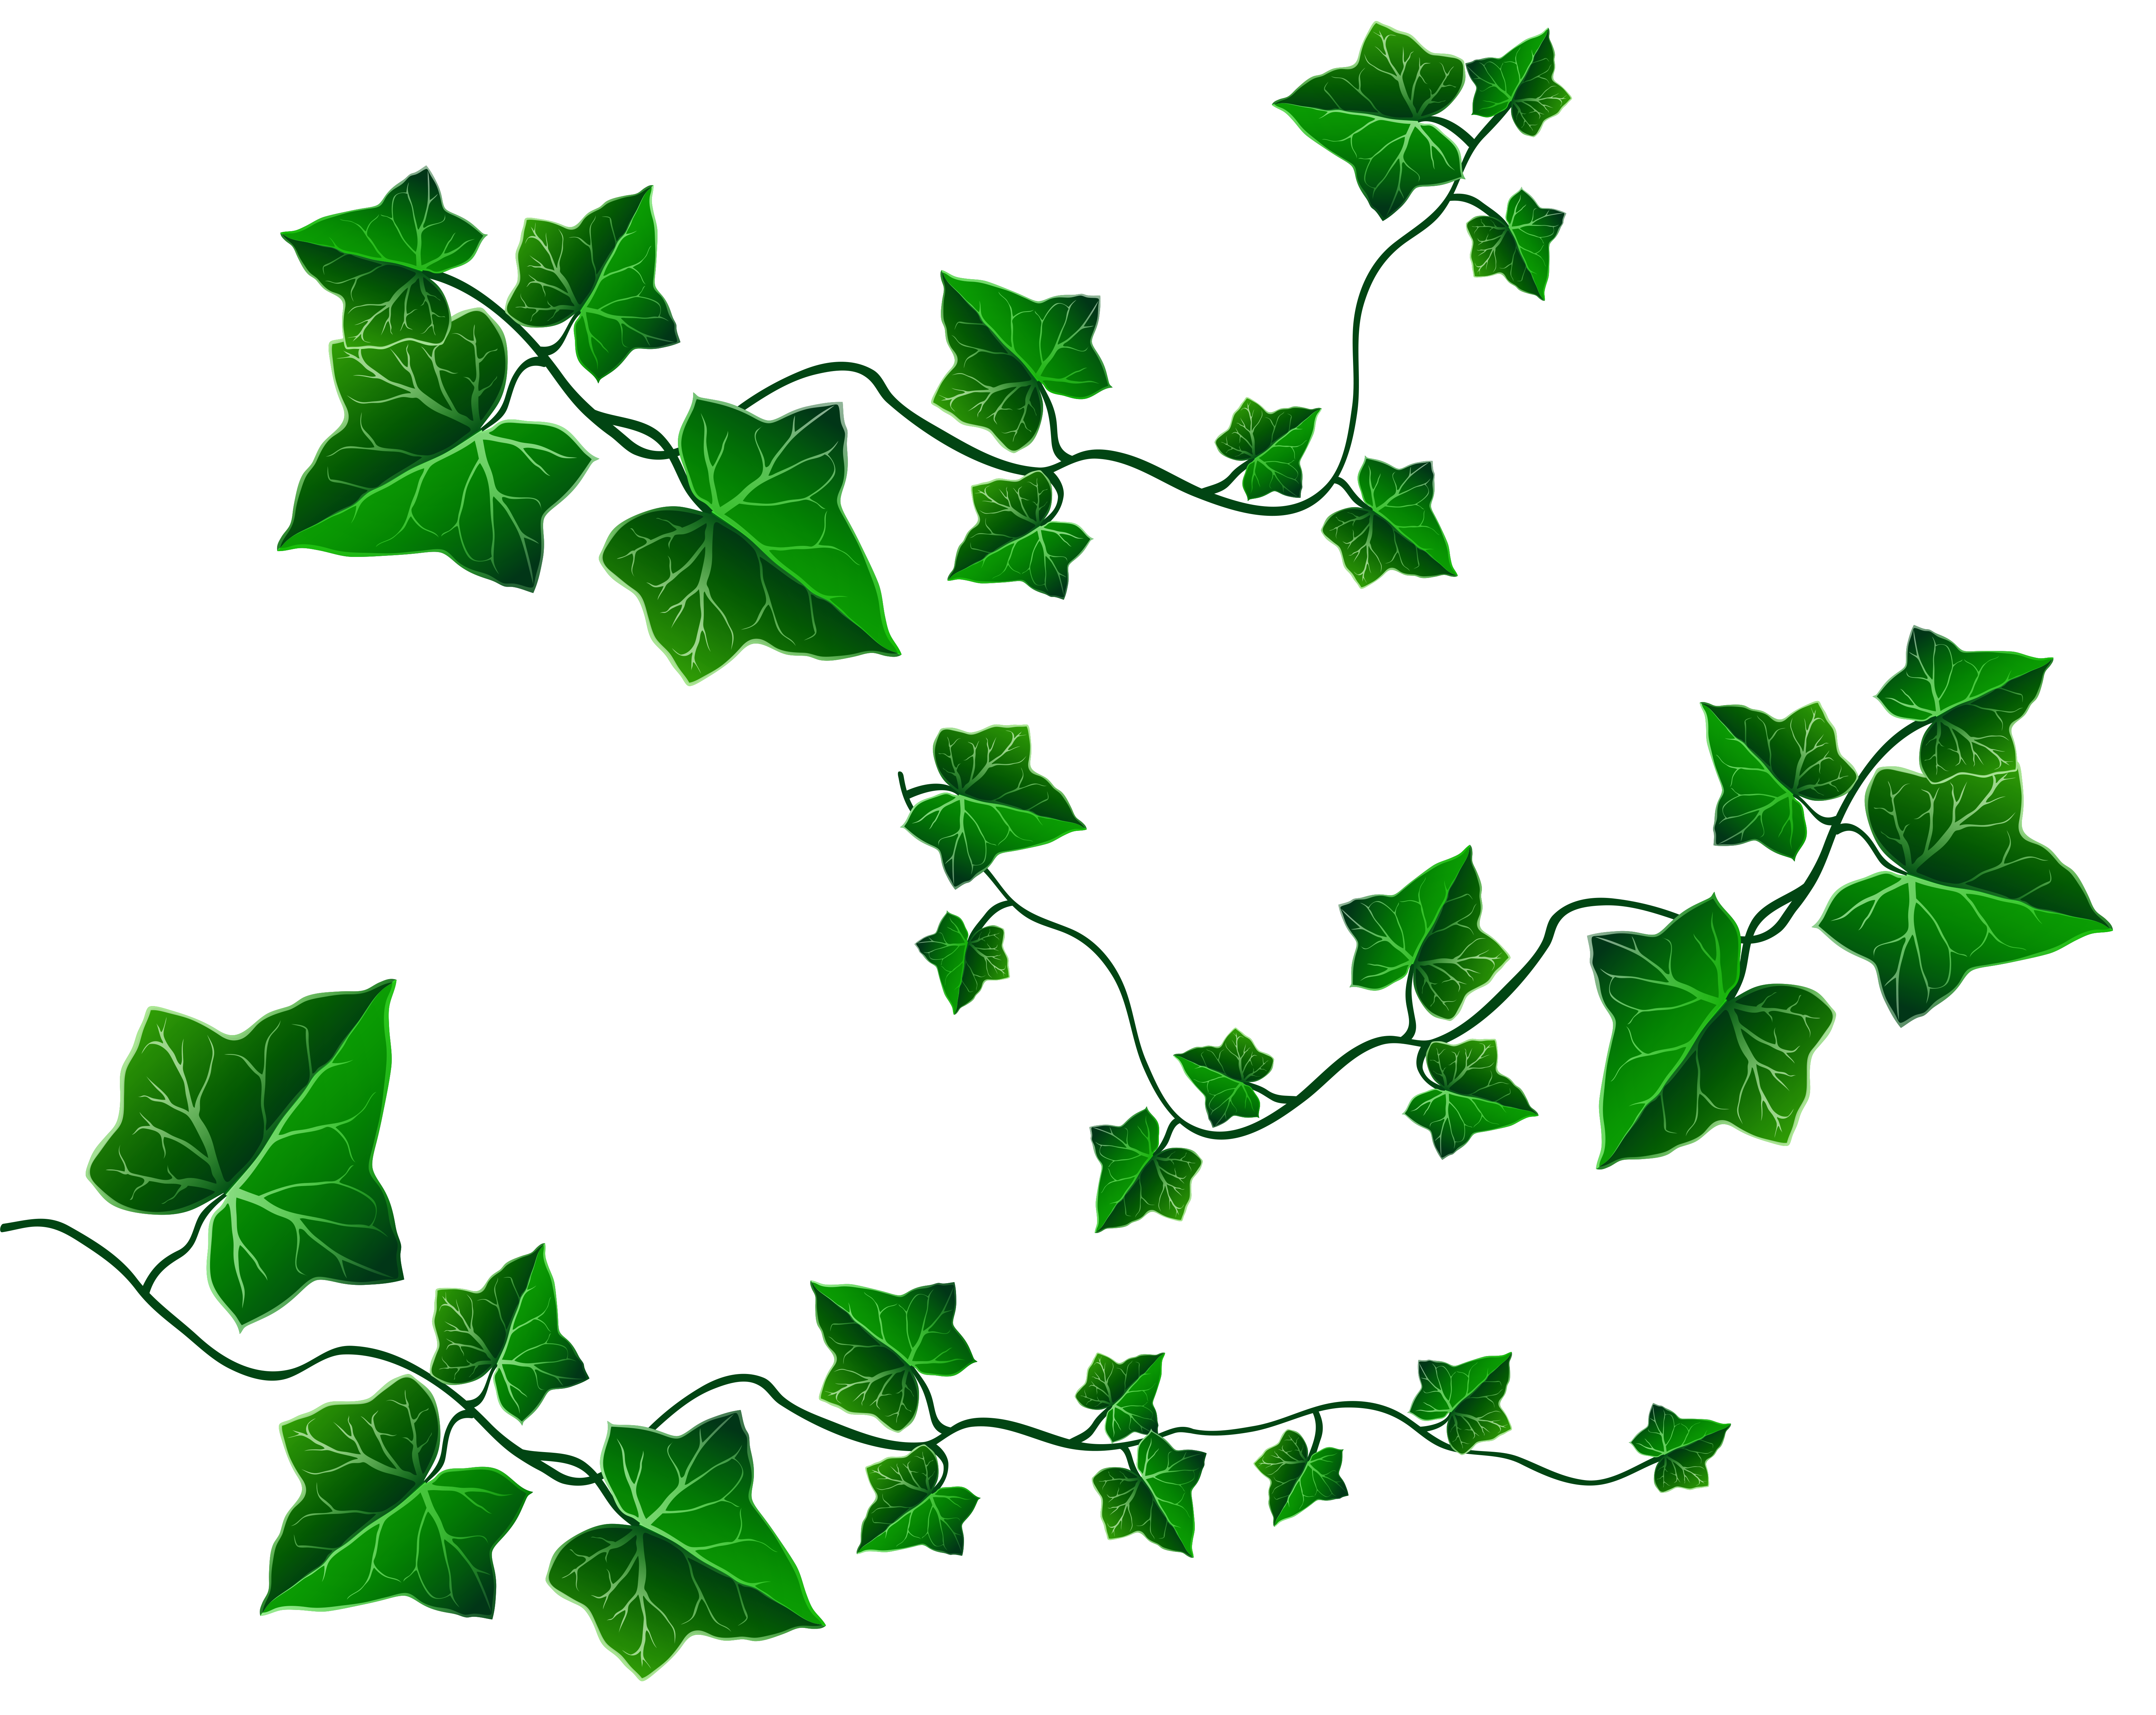 Green Vine PNG Transparent, Green Vines, Vine Clipart, Green, Leaf PNG  Image For Free Download